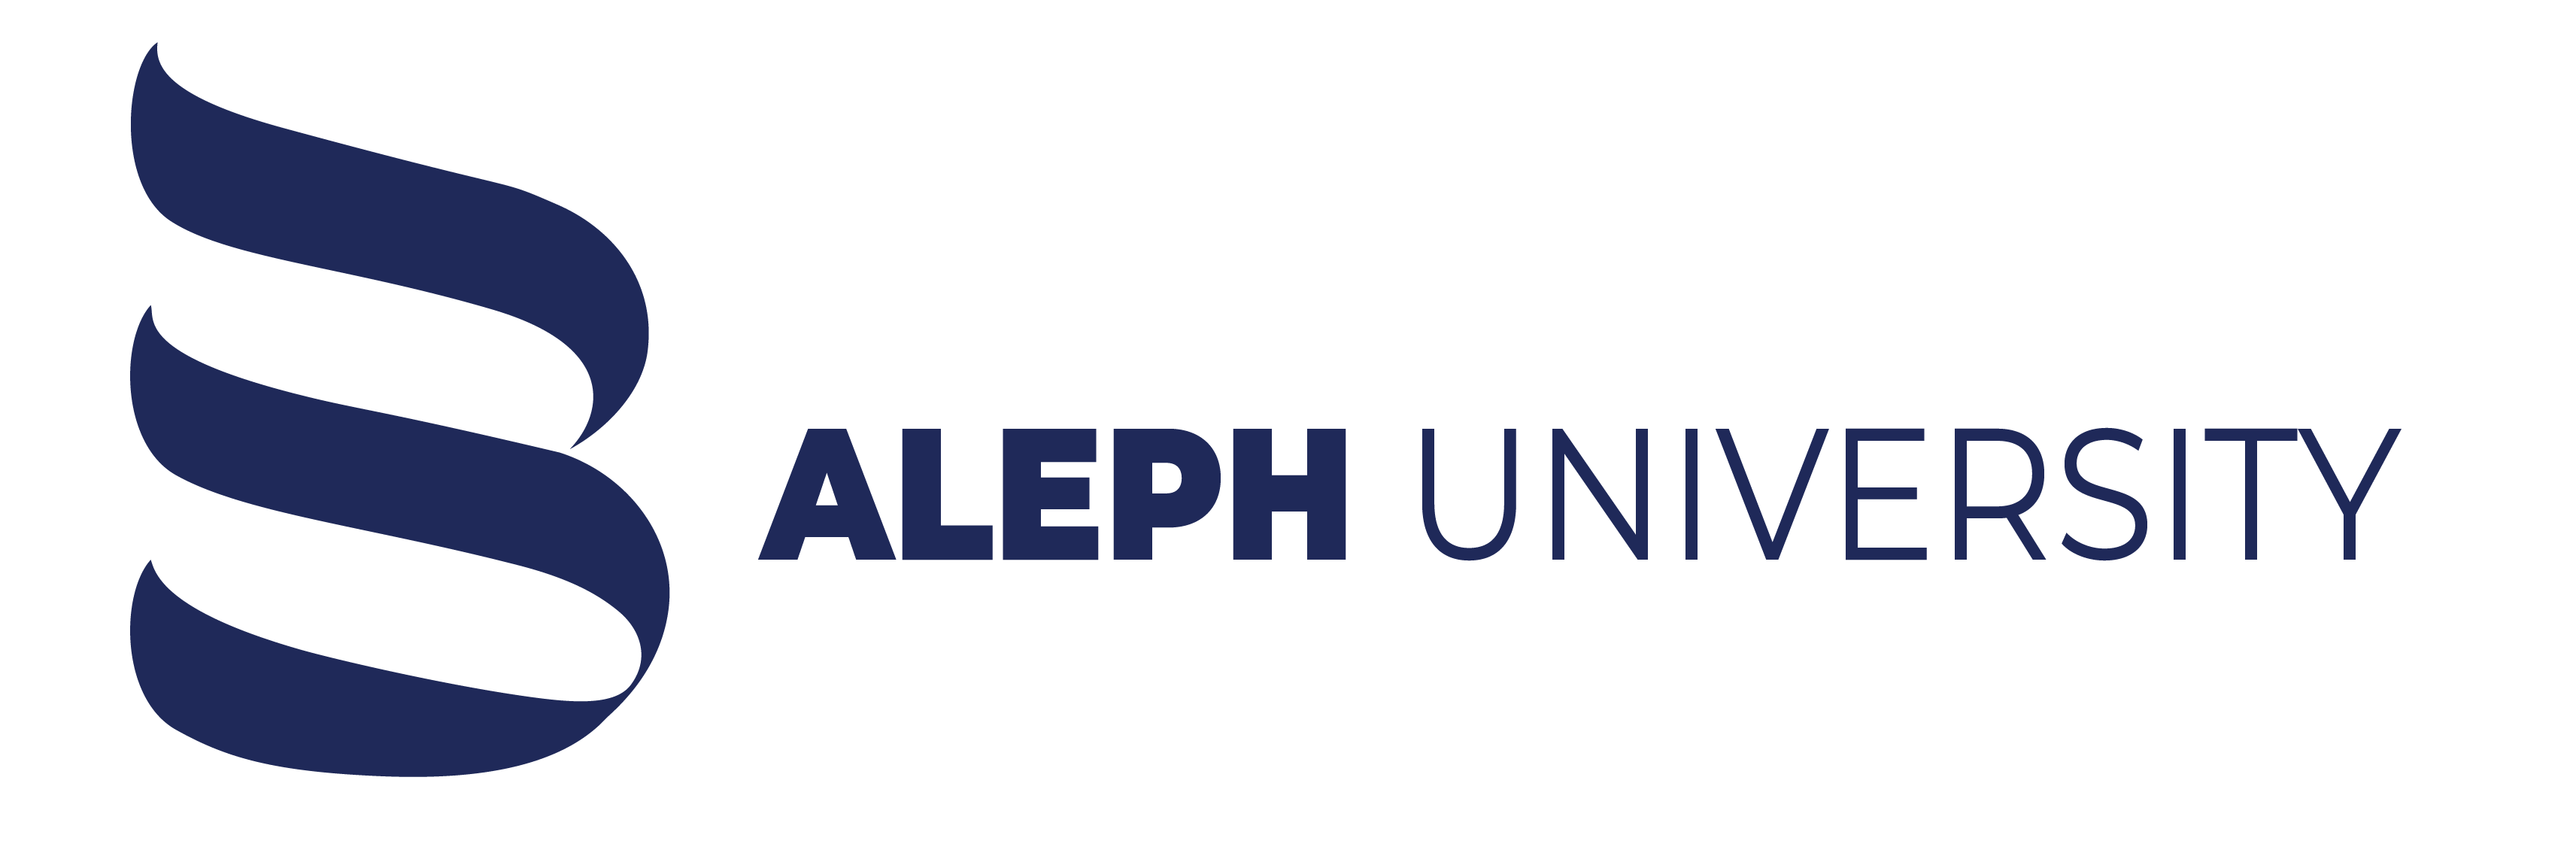 ALEPH UNIVERSITY